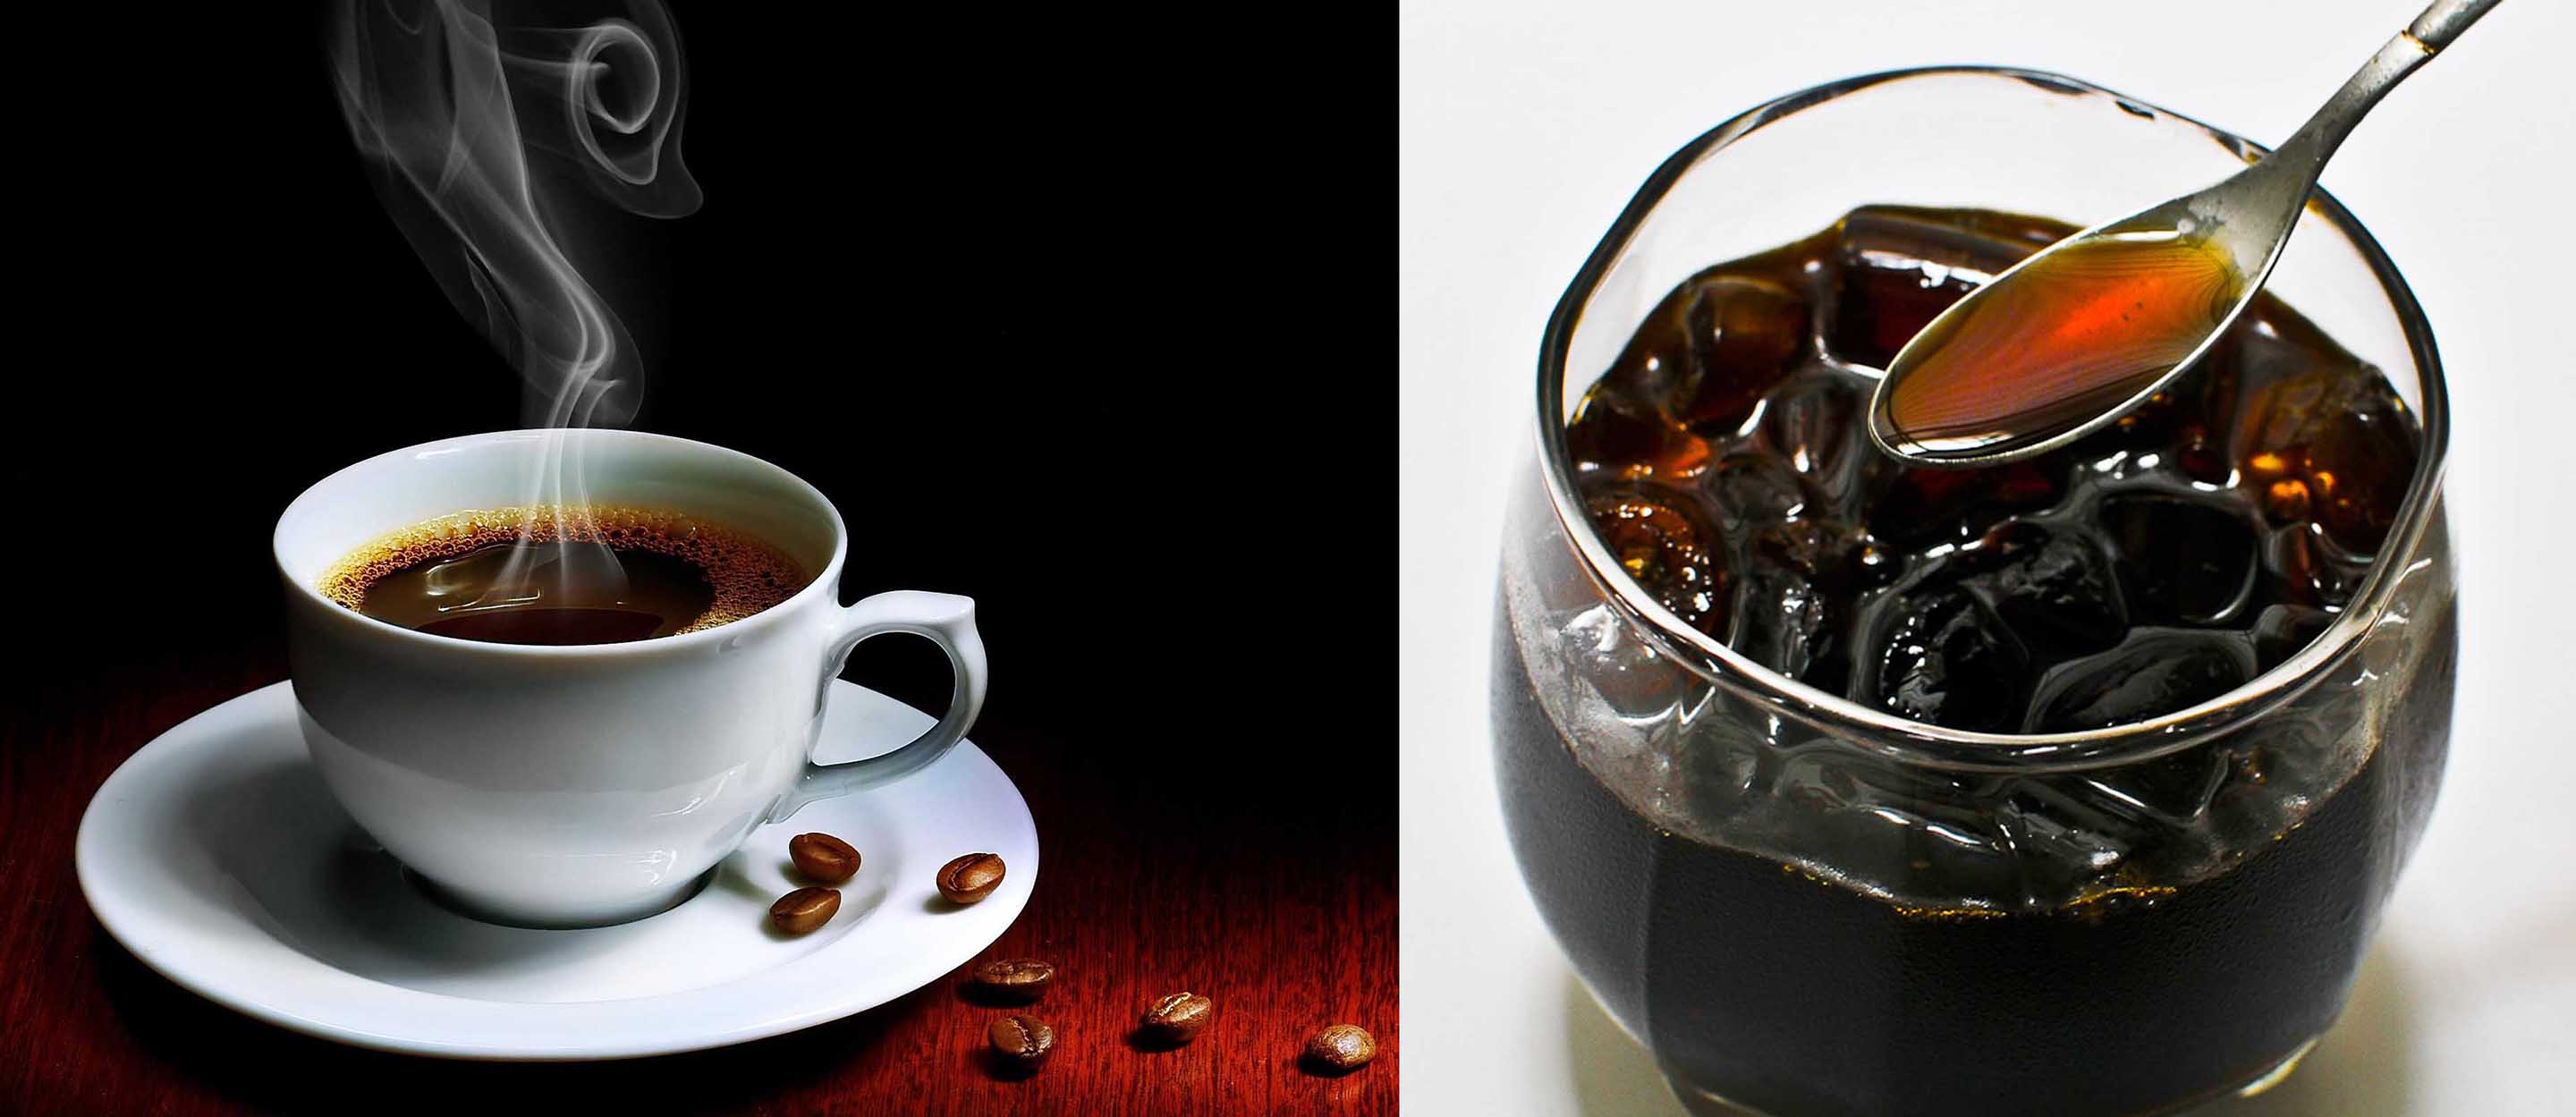 Học ngay 4 cách nhận biết cà phê nguyên chất và cà phê chứa hóa chất chuẩn xác - Ảnh 4